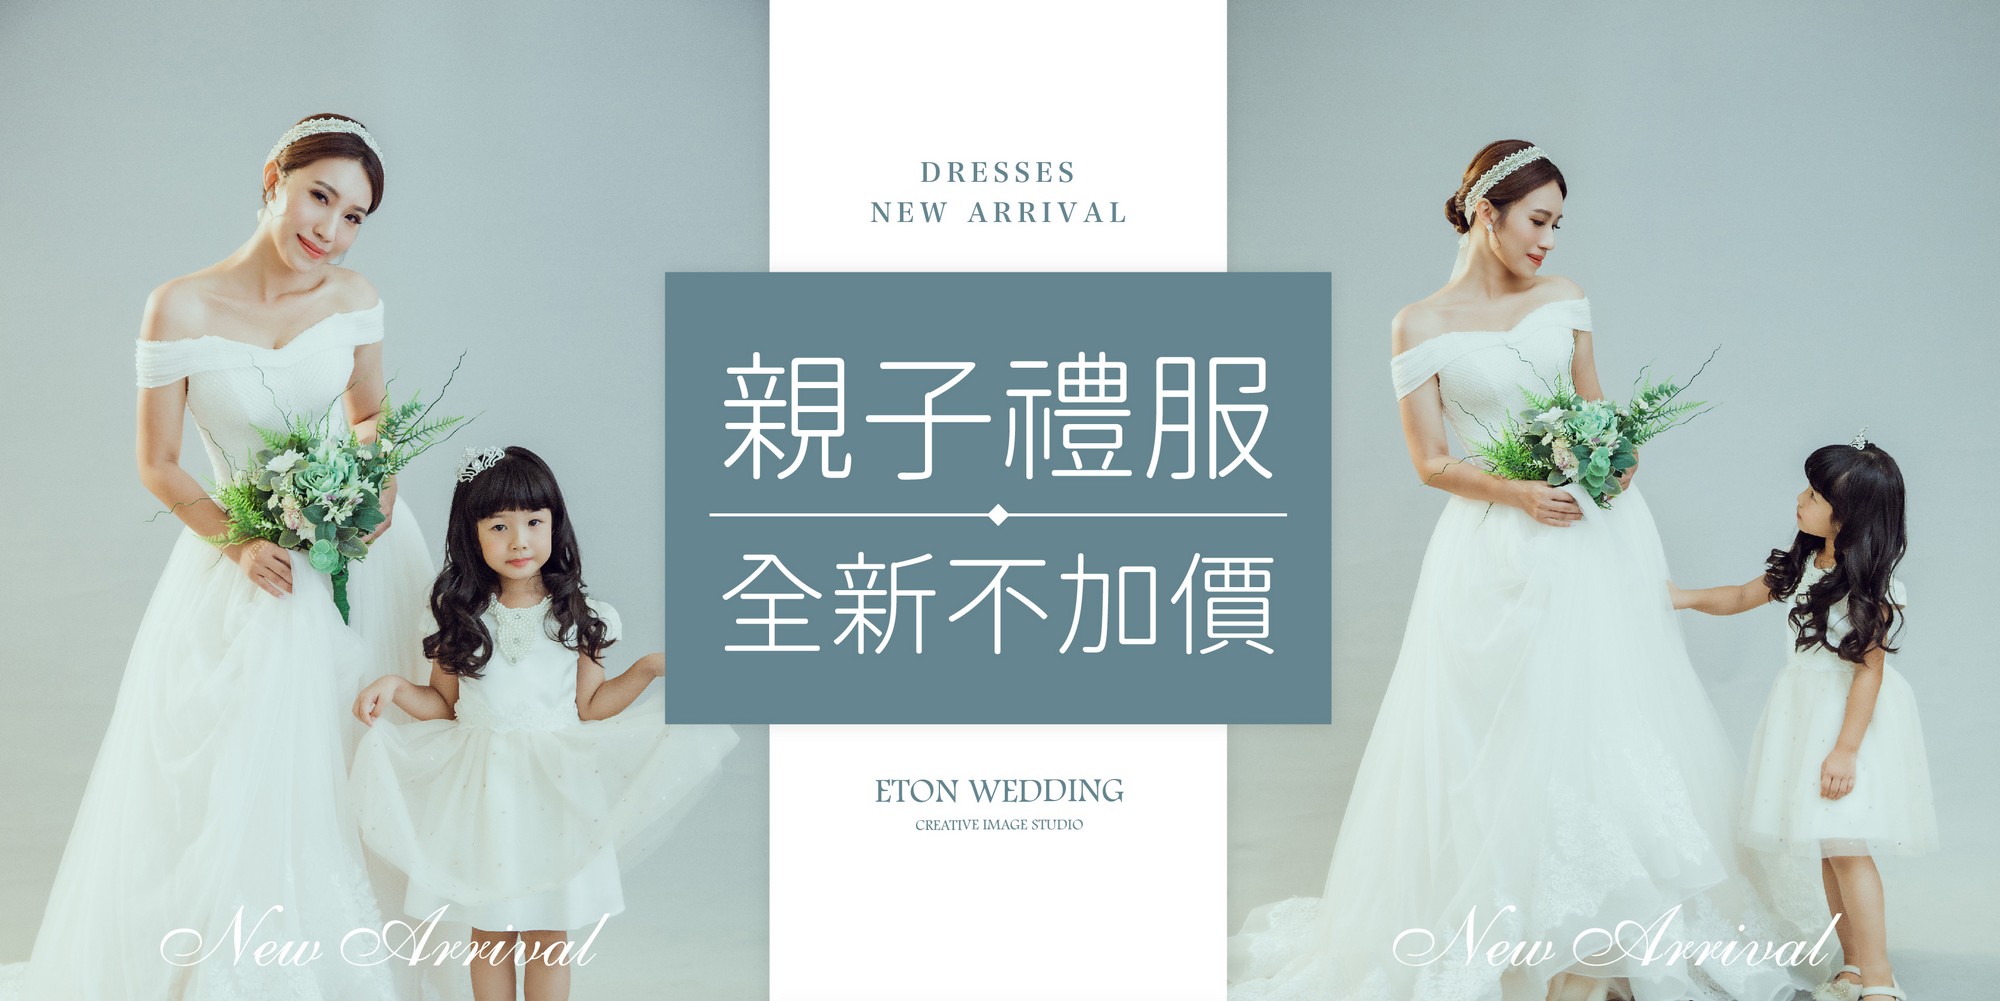 台北自助婚紗,台北婚紗店,台北婚紗攝影,台北婚紗工作室